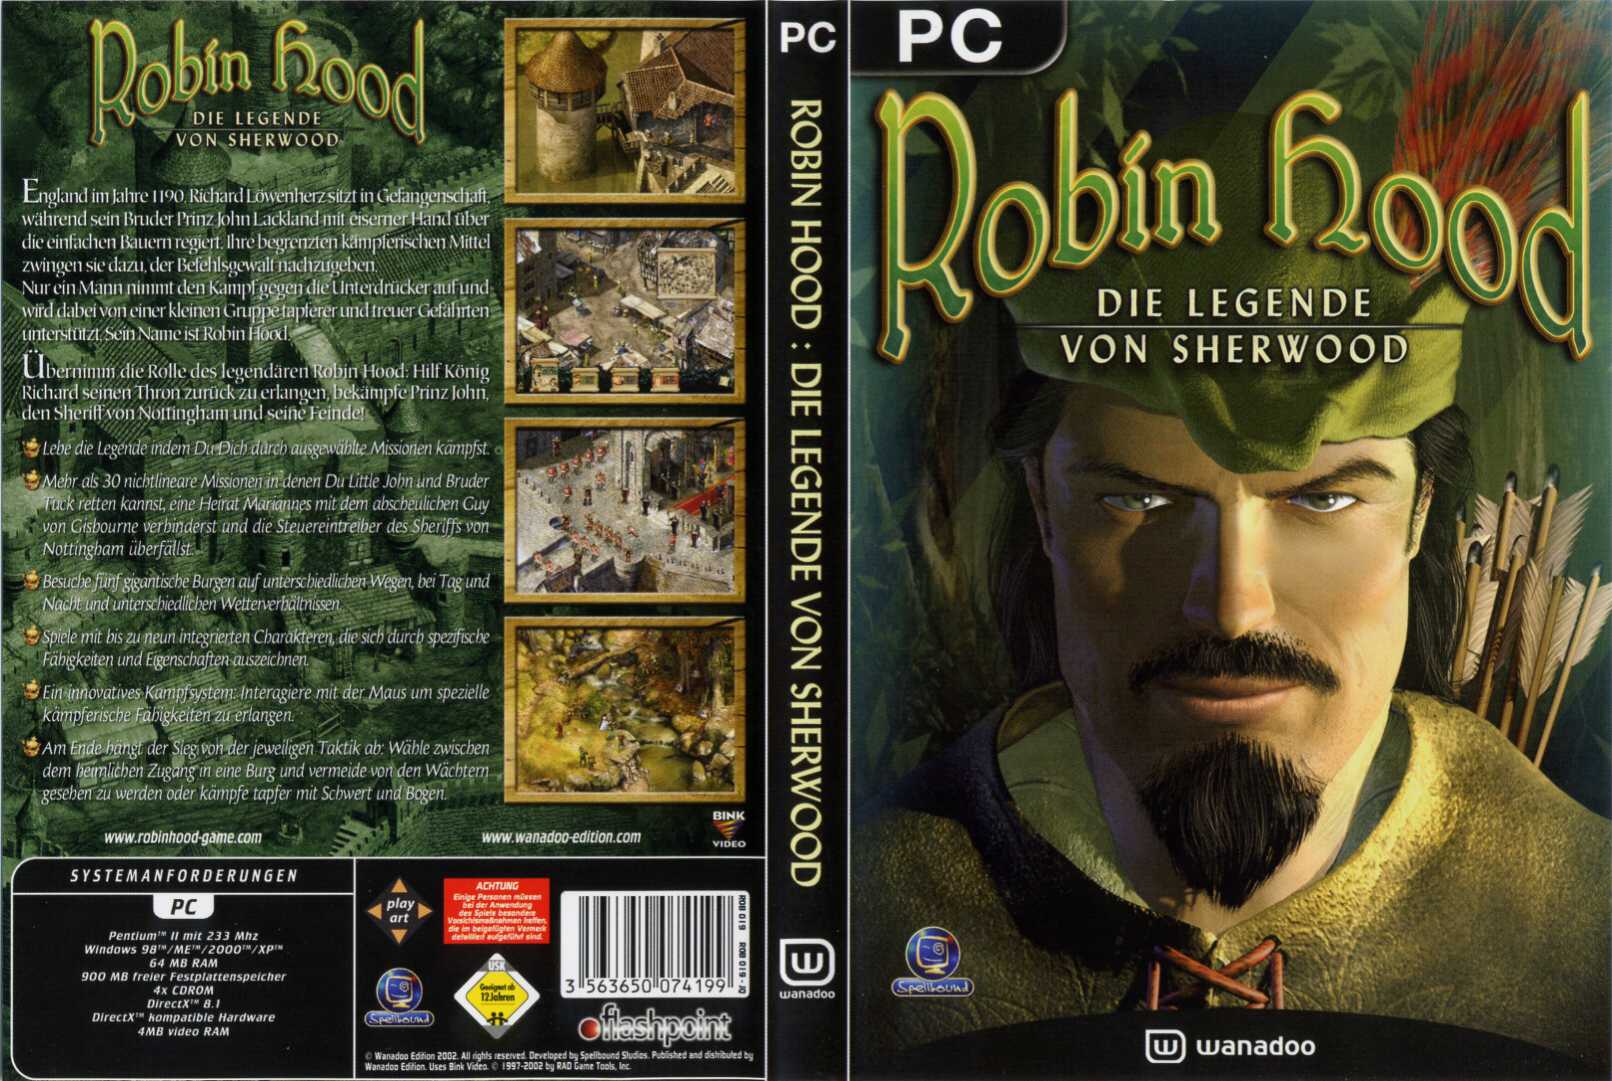 Robin Hood Die Legende von Sherwood DVD | PC Covers ...